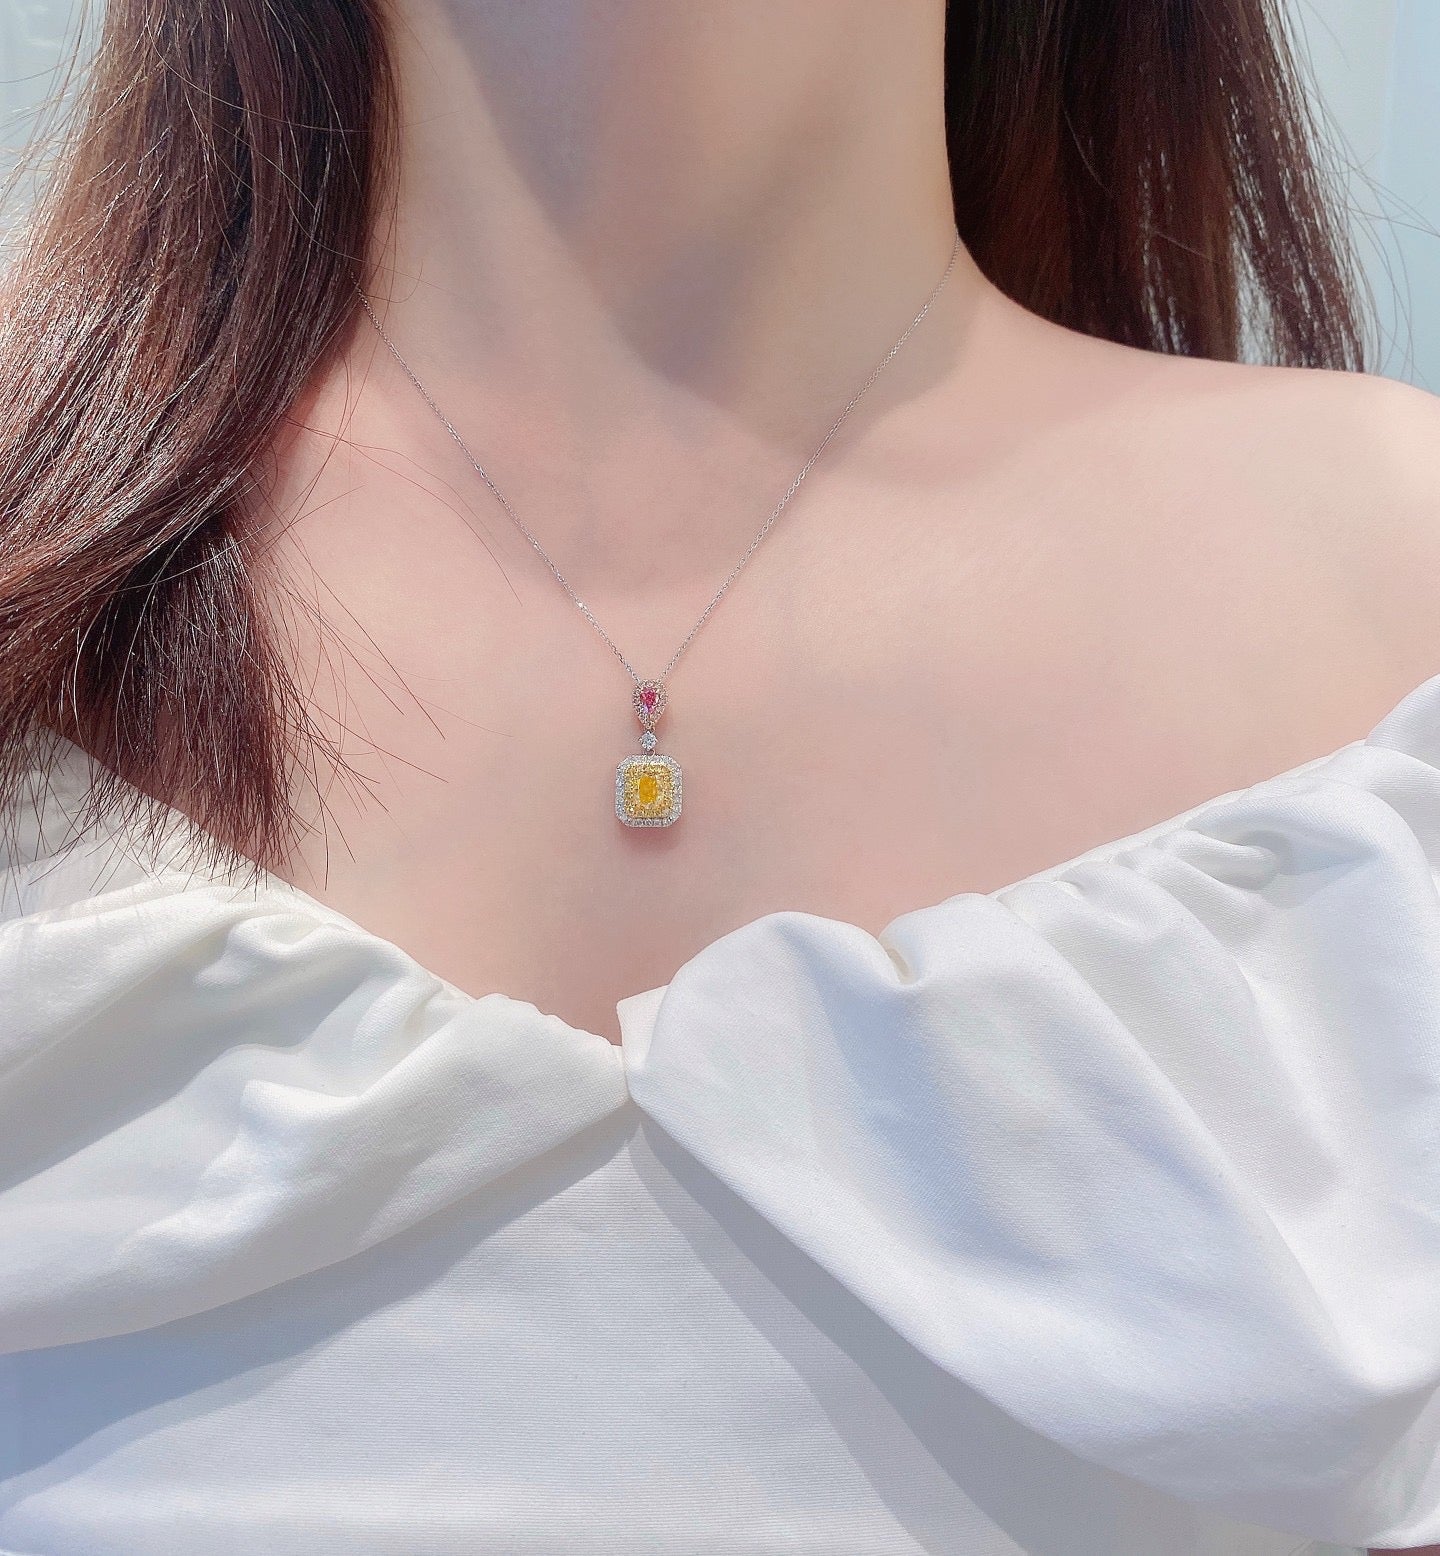 Yellow Diamond Necklaces & Pendants | Poyas Jewelry